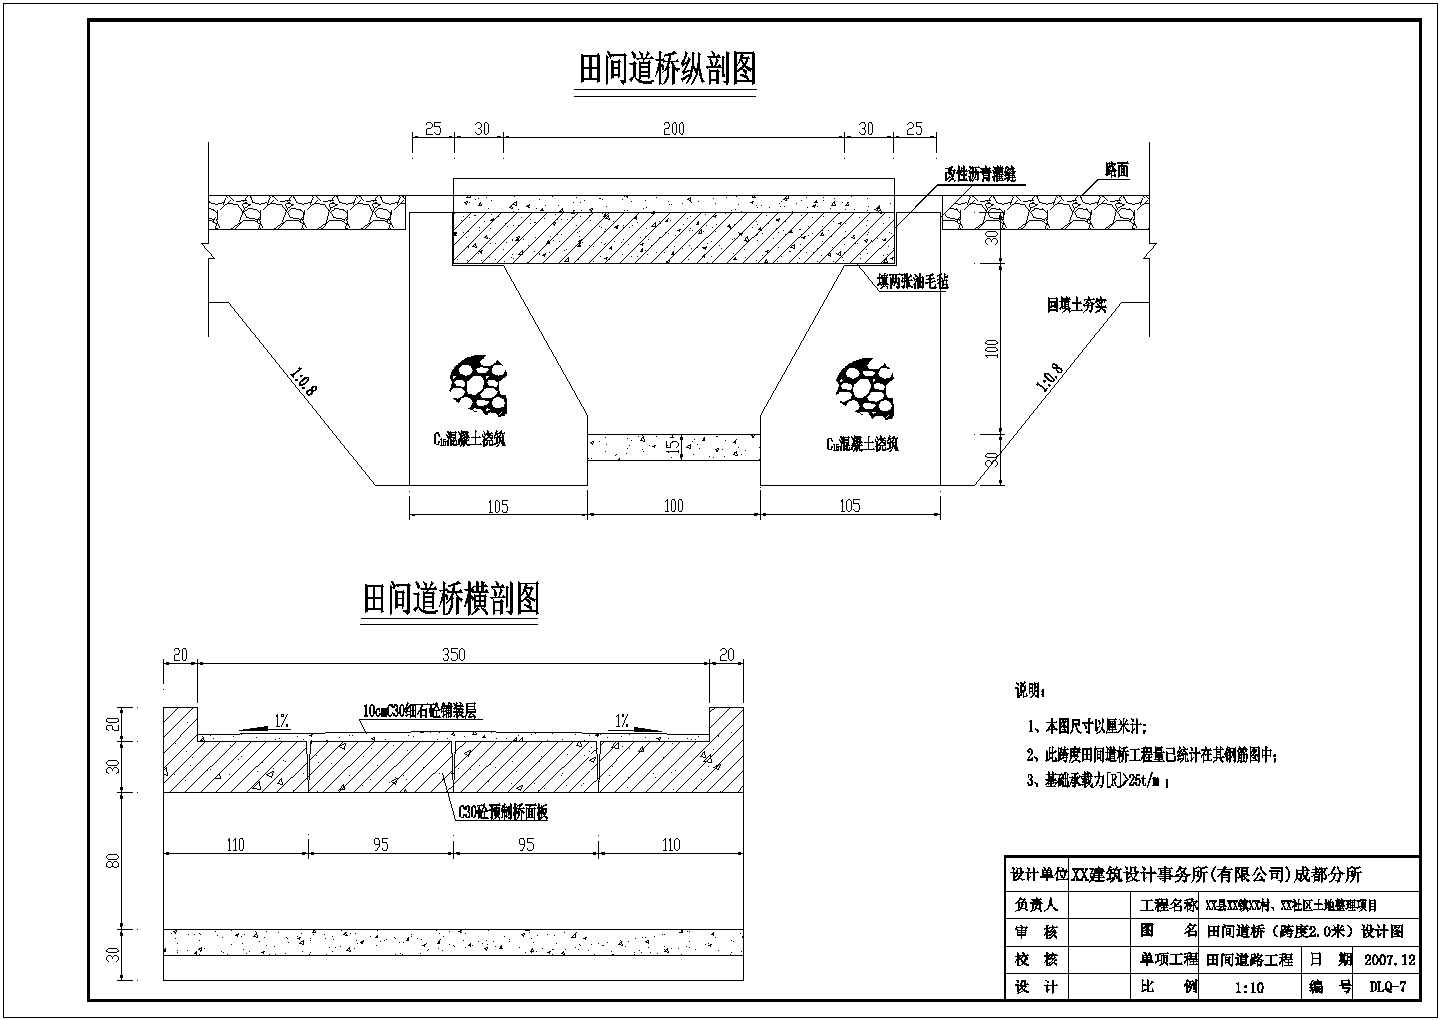 四川丘陵山区大型土地整理项目施工图设计（面积大工程节点多）